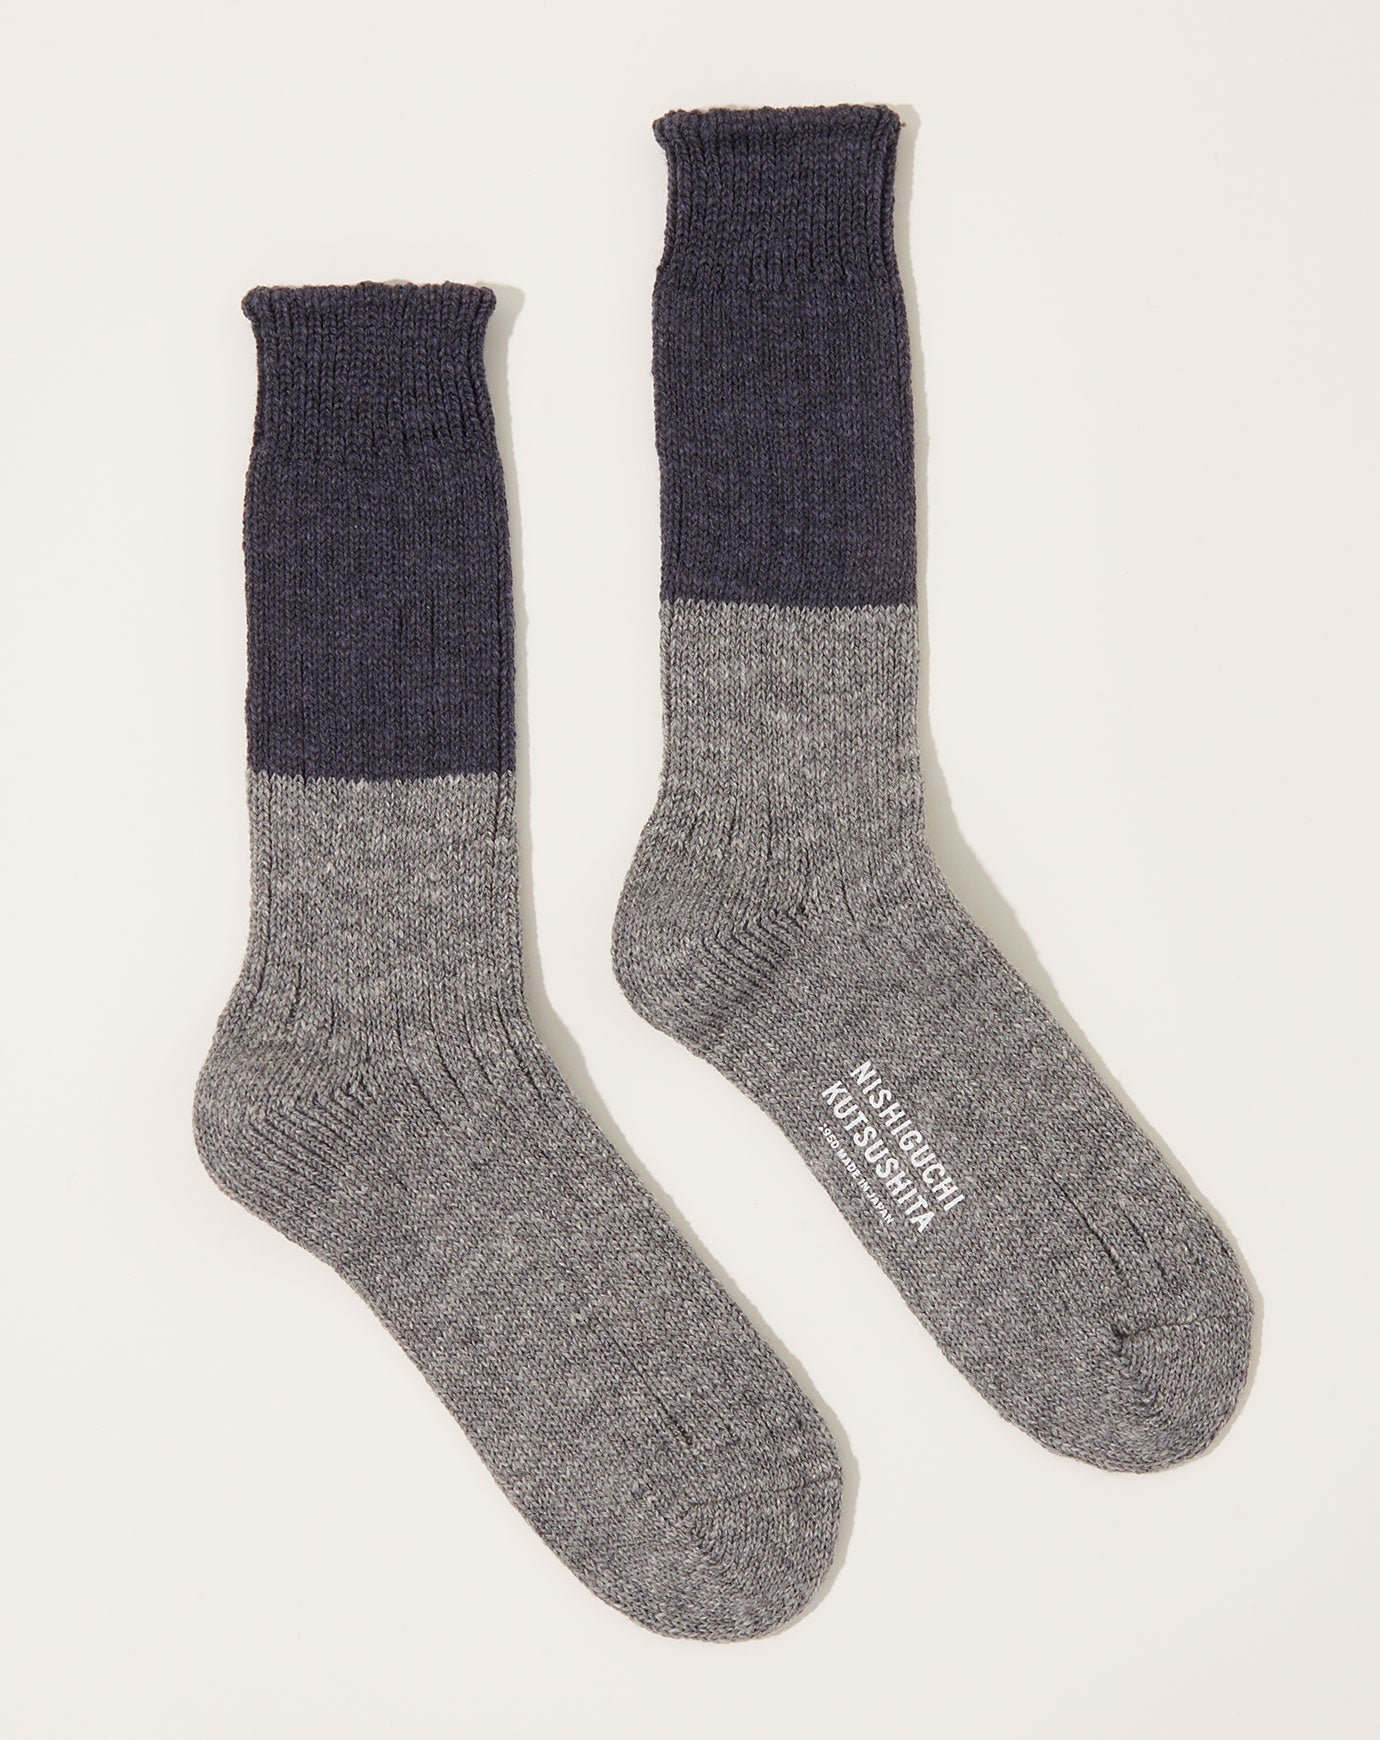 Nishiguchi Kutsushita Wool Cotton Slab Socks in Charcoal